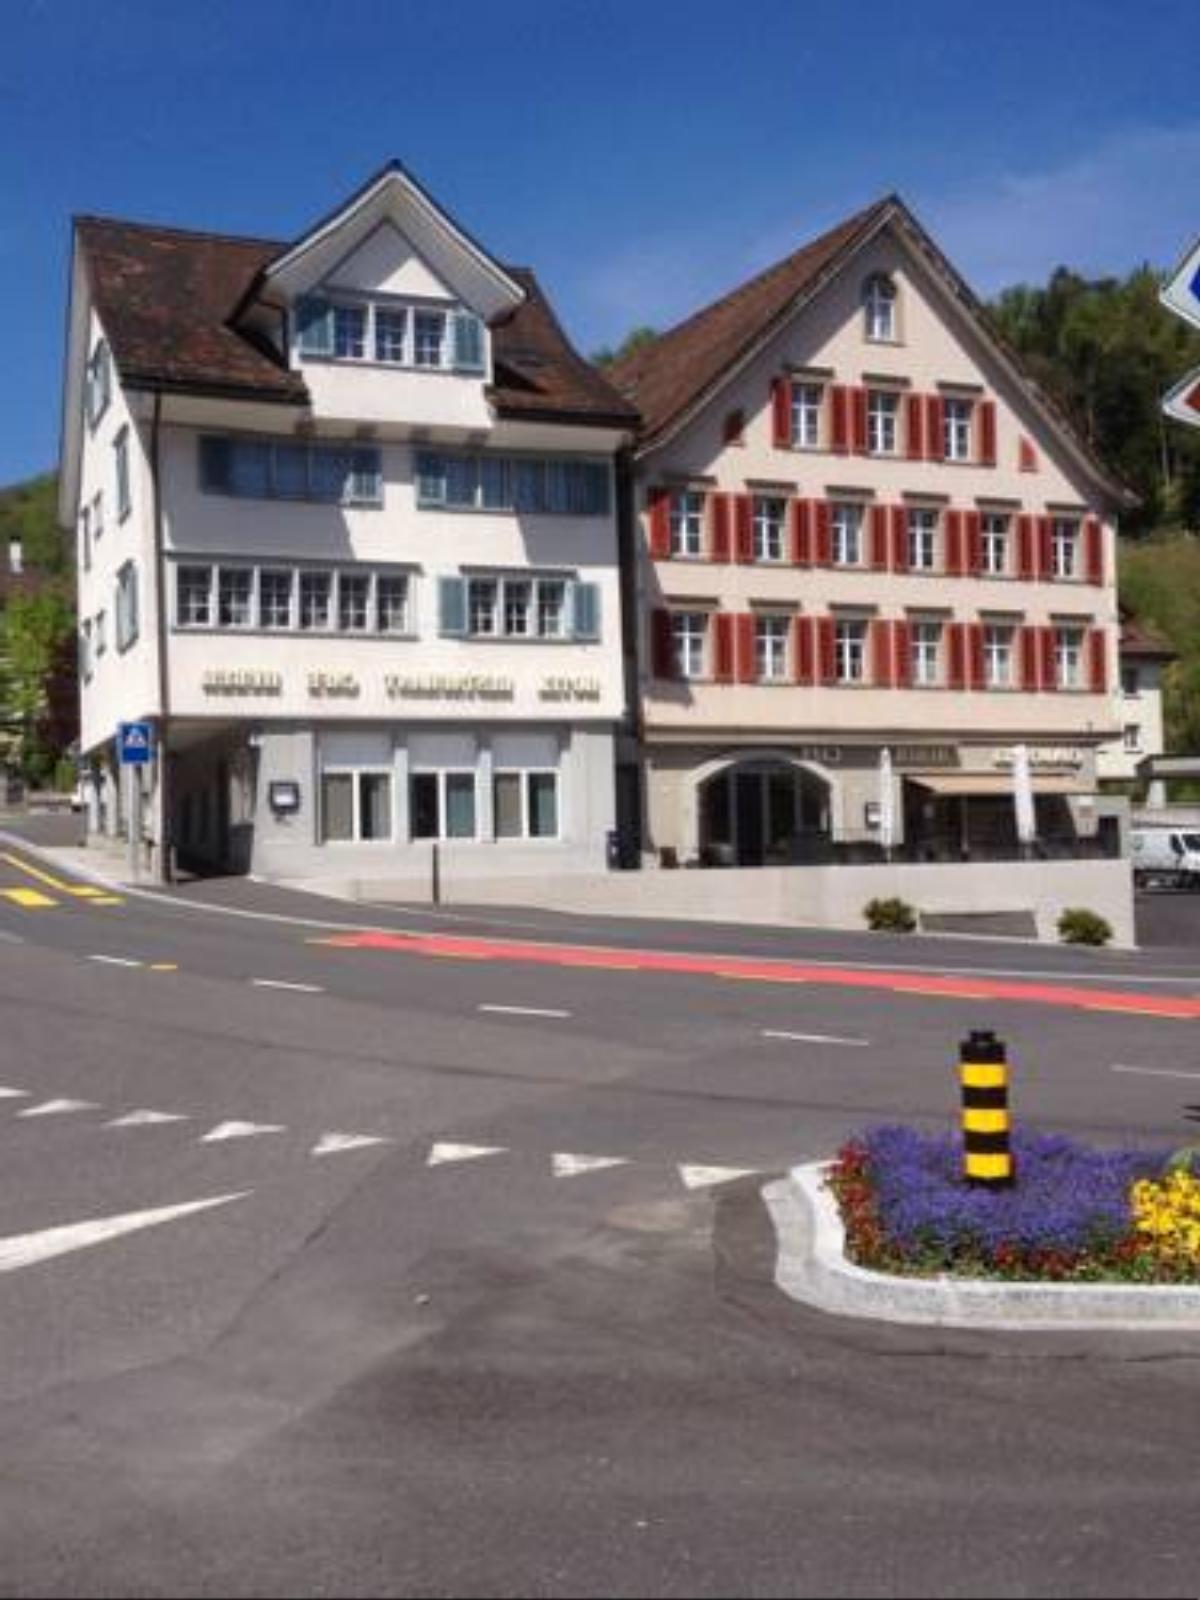 Café-Conditorei Hotel Huber Hotel Lichtensteig Switzerland